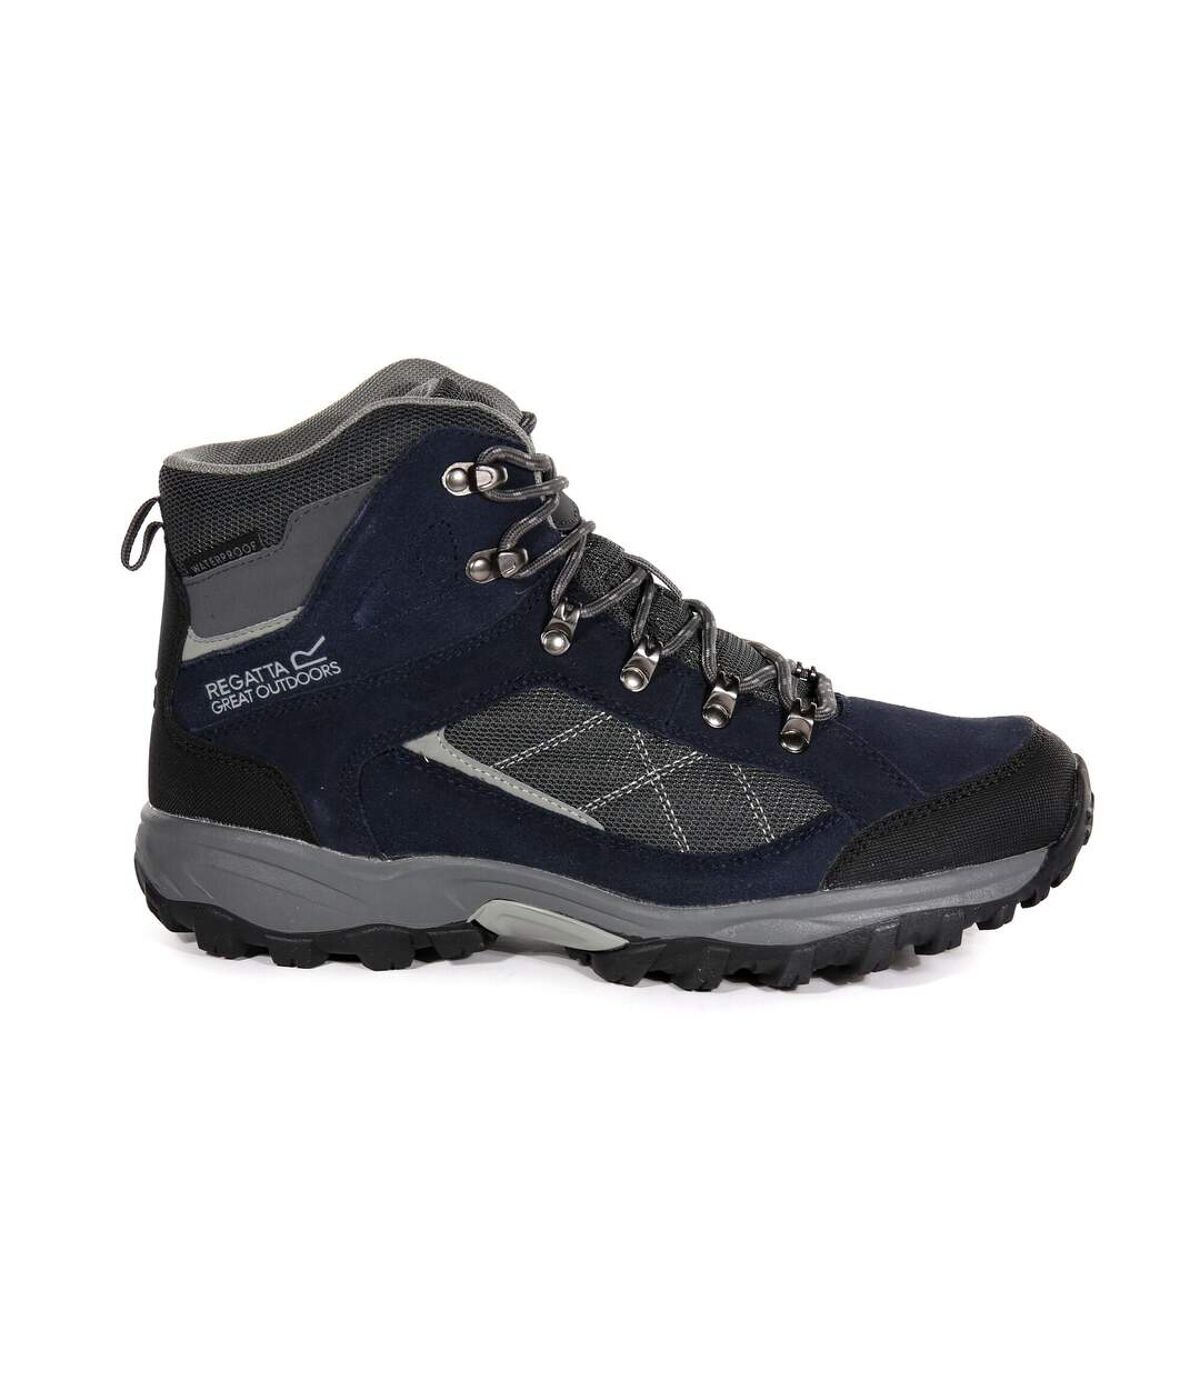 Regatta - Chaussures de randonnée KOTA - Homme (Bleu marine) - UTRG2839